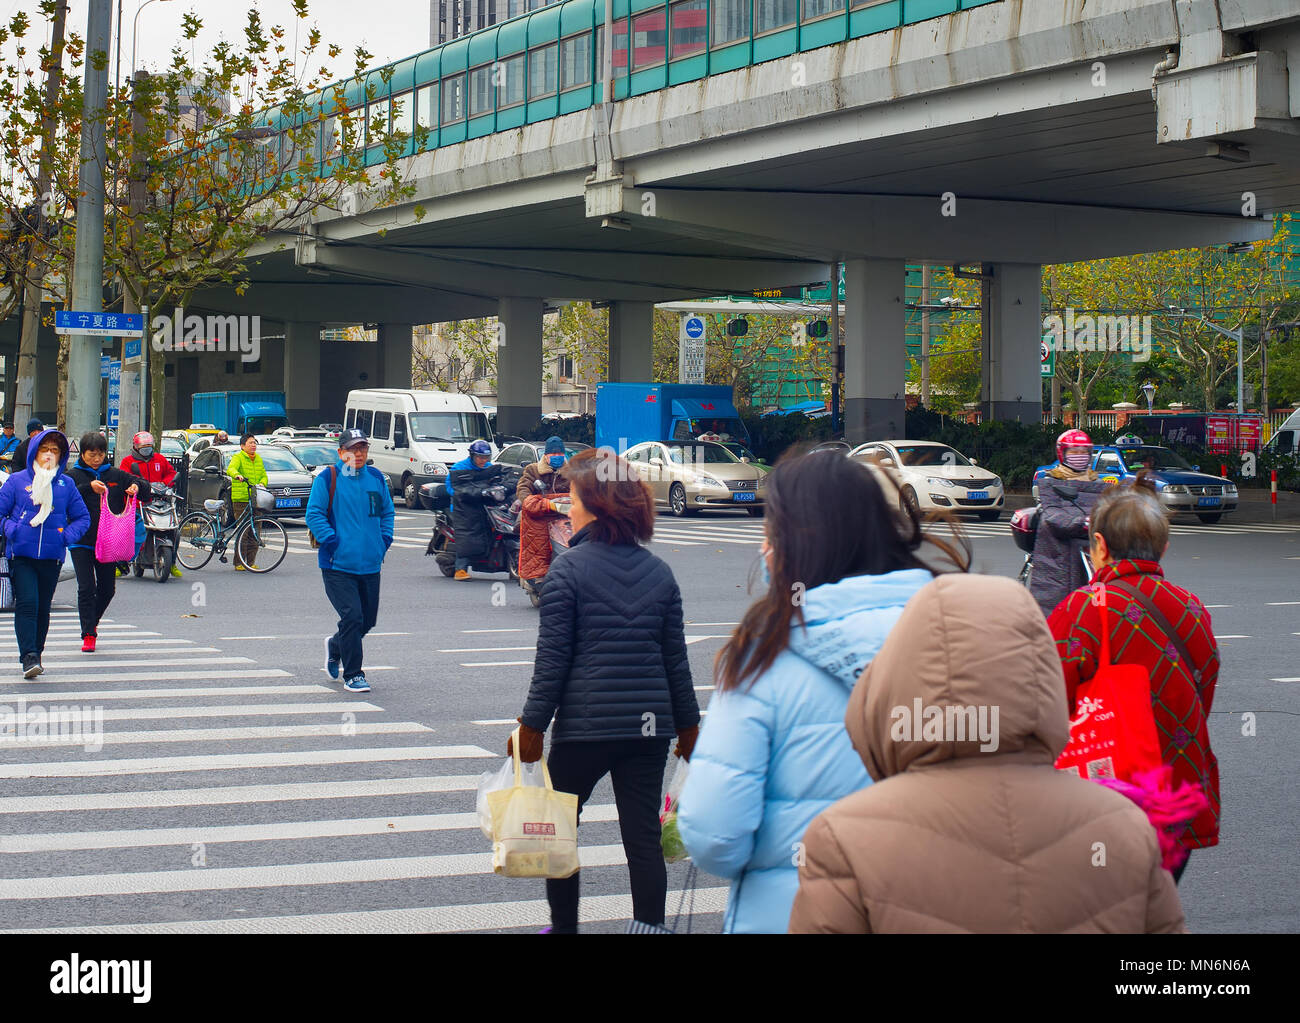 SHANGHAI, China - Dec 23, 2016: Leute, die über die Straße in der Innenstadt von Shanghai. Shanghai ist eine der am dichtesten bevölkerten Städte der Welt. Stockfoto